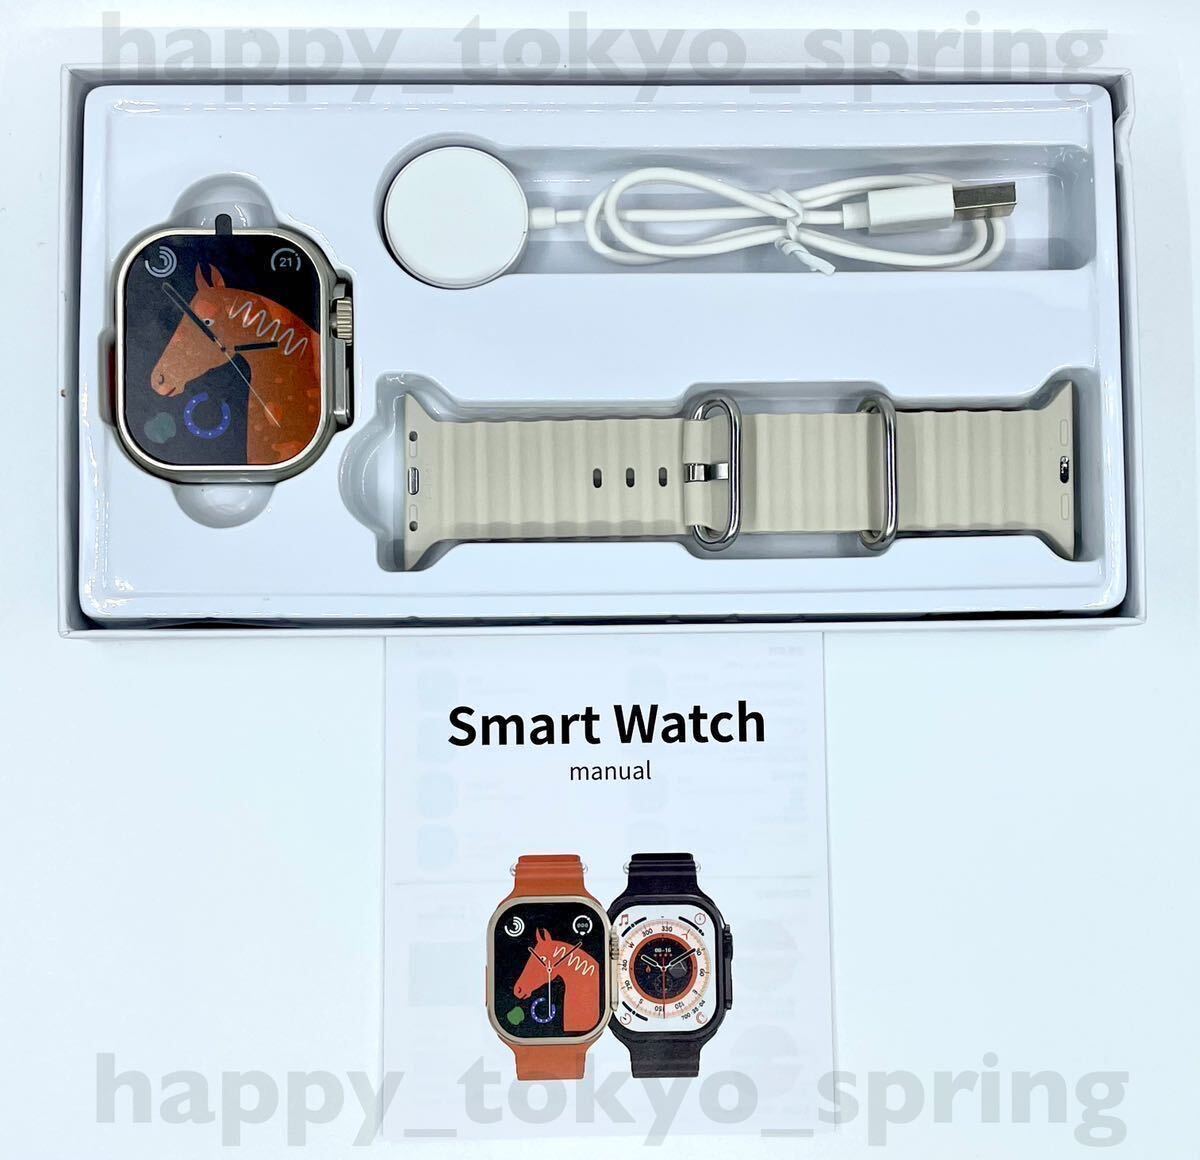  новый товар Apple Watch Ultra2 товар-заменитель 2.19 дюймовый большой экран S9 смарт-часы телефонный разговор музыка многофункциональный здоровье спорт водонепроницаемый . средний кислород android кровяное давление 